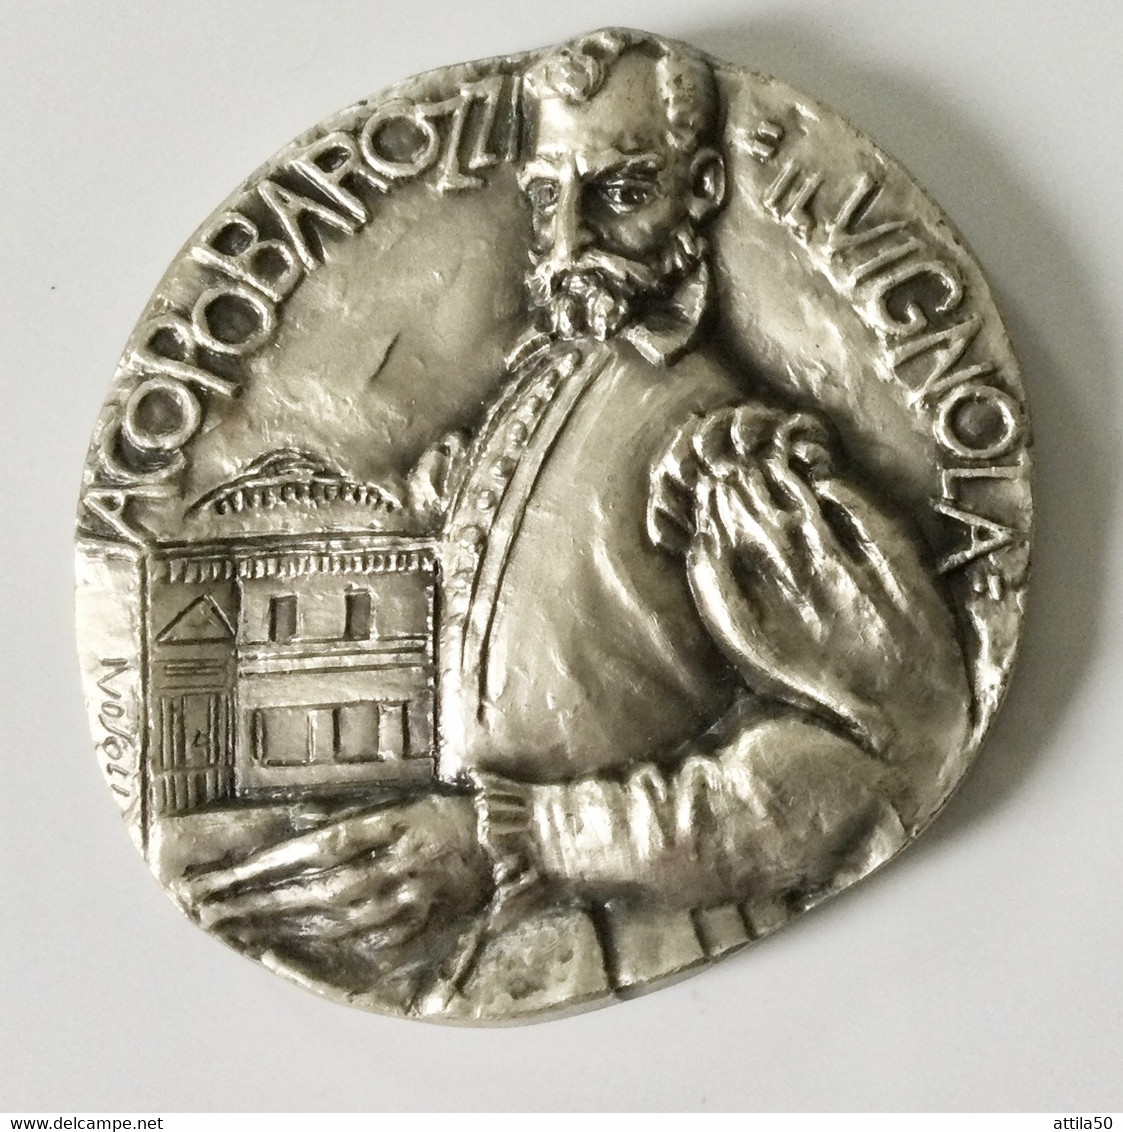 Jacopo Barozzi Detto “Il Vignola” (1507-1573) Grande Medaglia D’argento 800 (483*MI) Gr.190 Diam.65 Mm. - 1973. - Monarchia/ Nobiltà